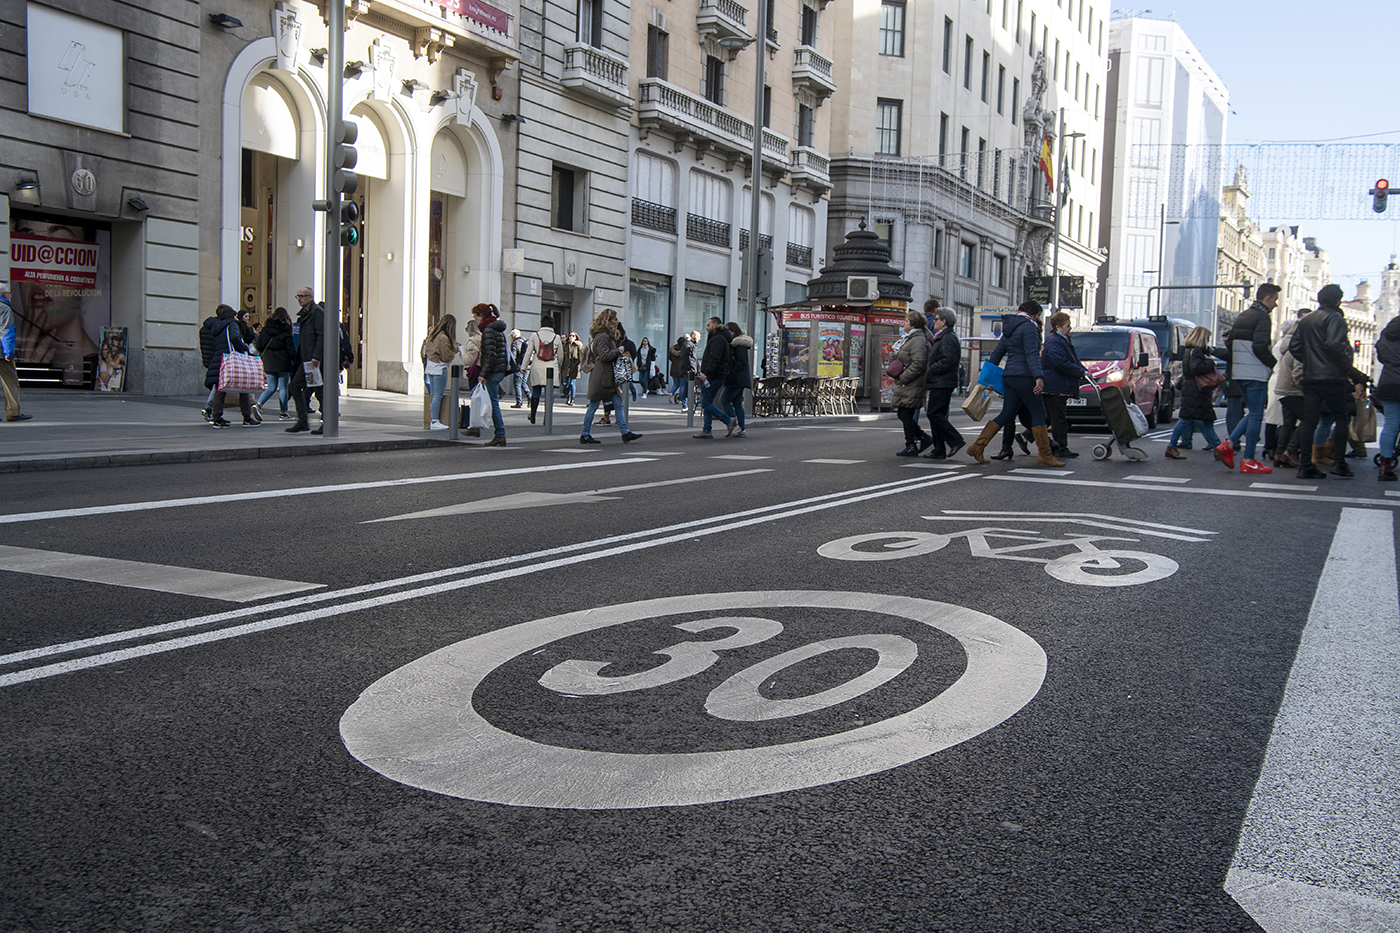 Peatones cruzando un semáforo en la calle Gran Vía de Madrid. En la calzada destaca señalizado la limitación de velocidad a 30Km hora y el carril bici